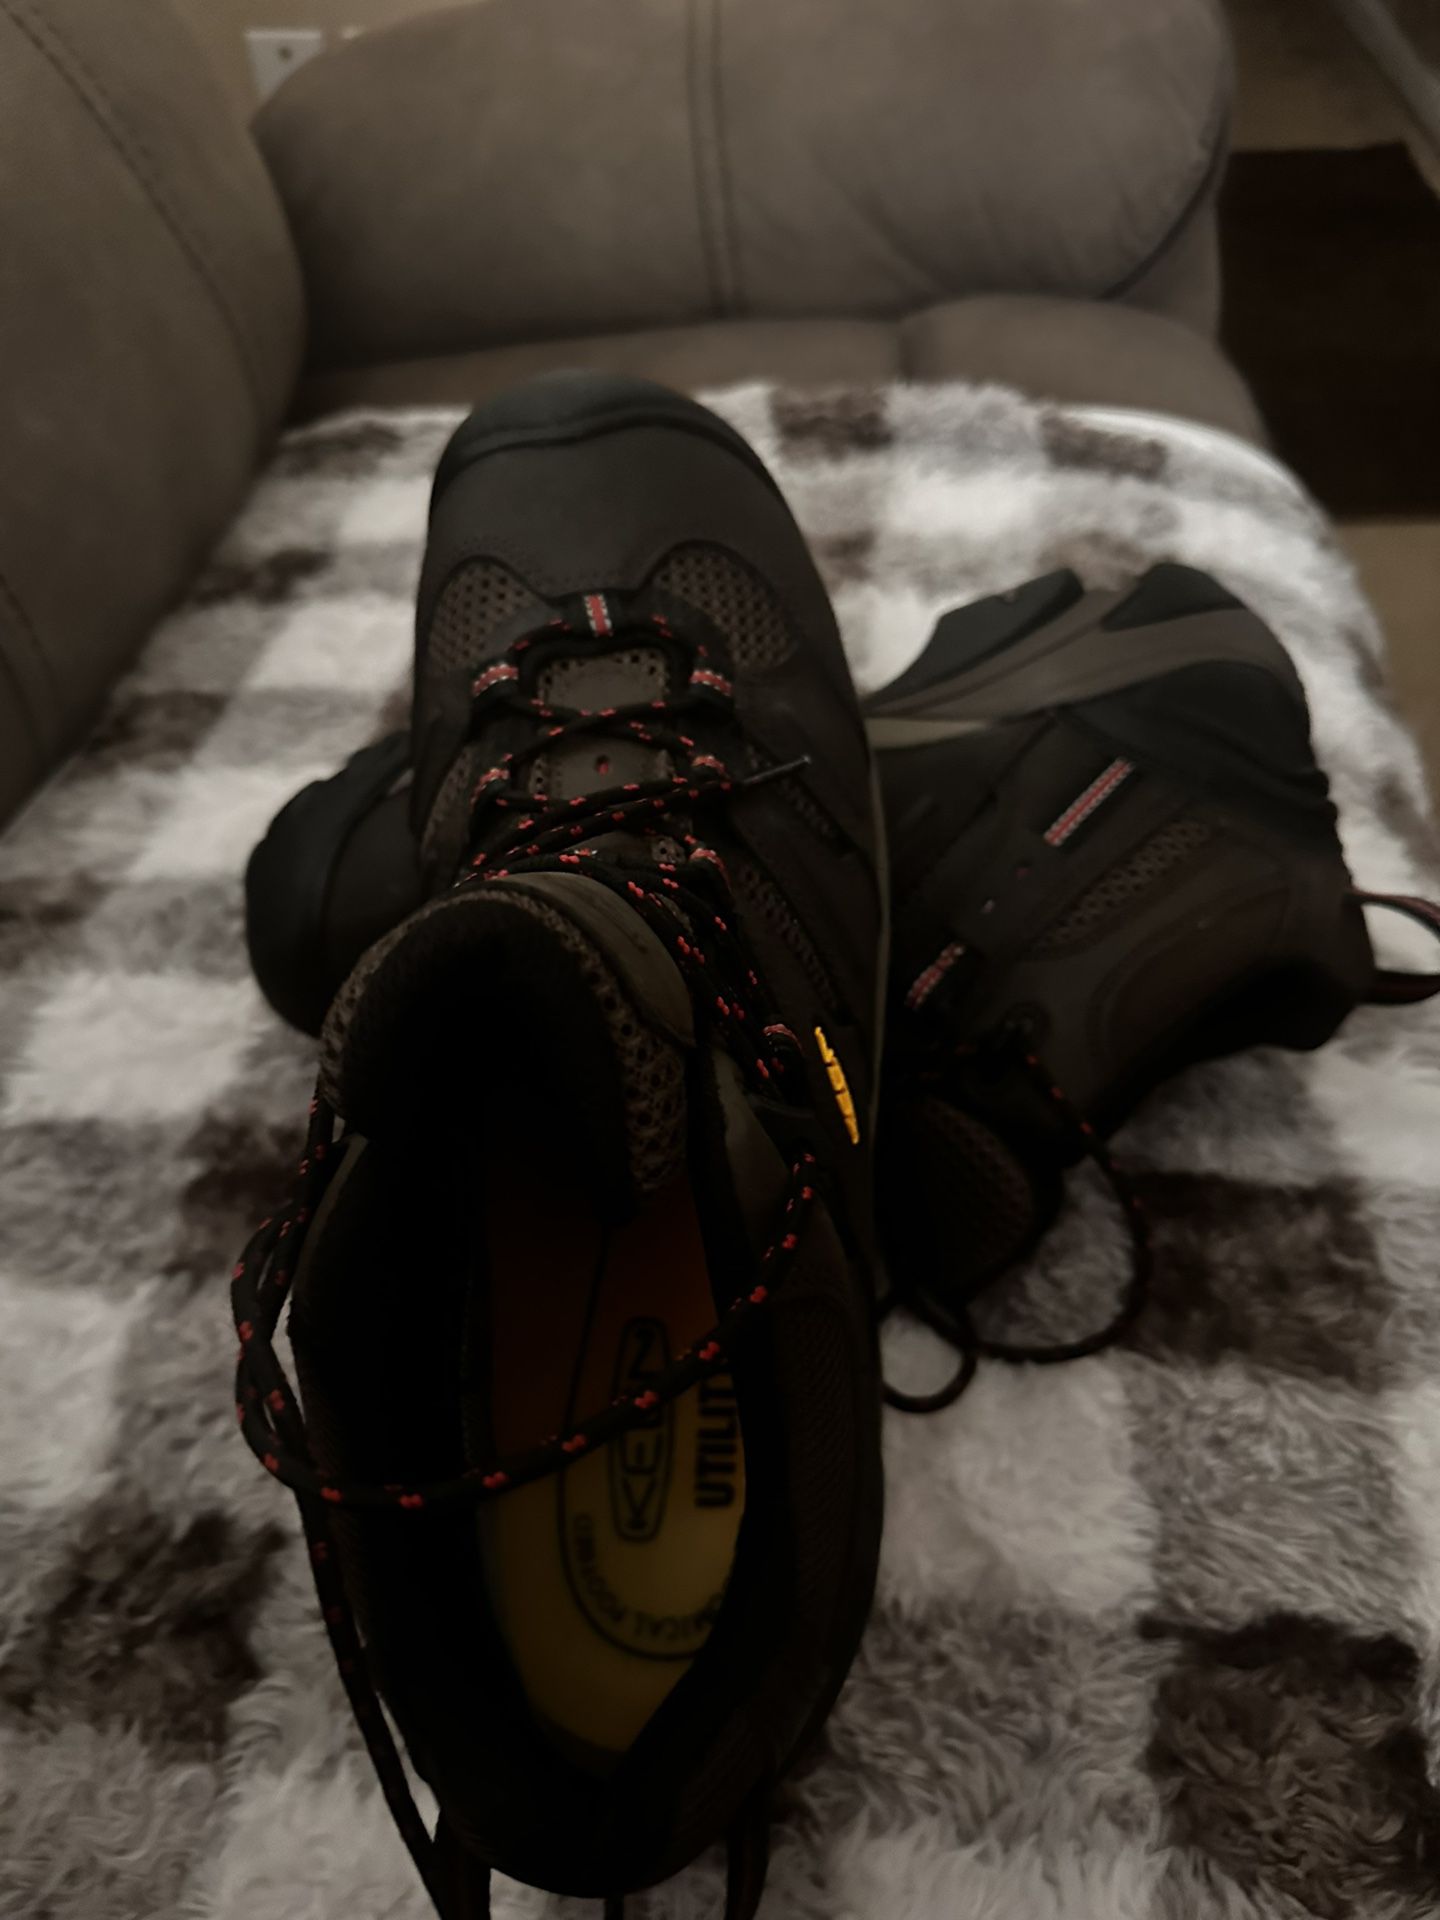 Keen Men’s steel toe boots “Waterproof” S12